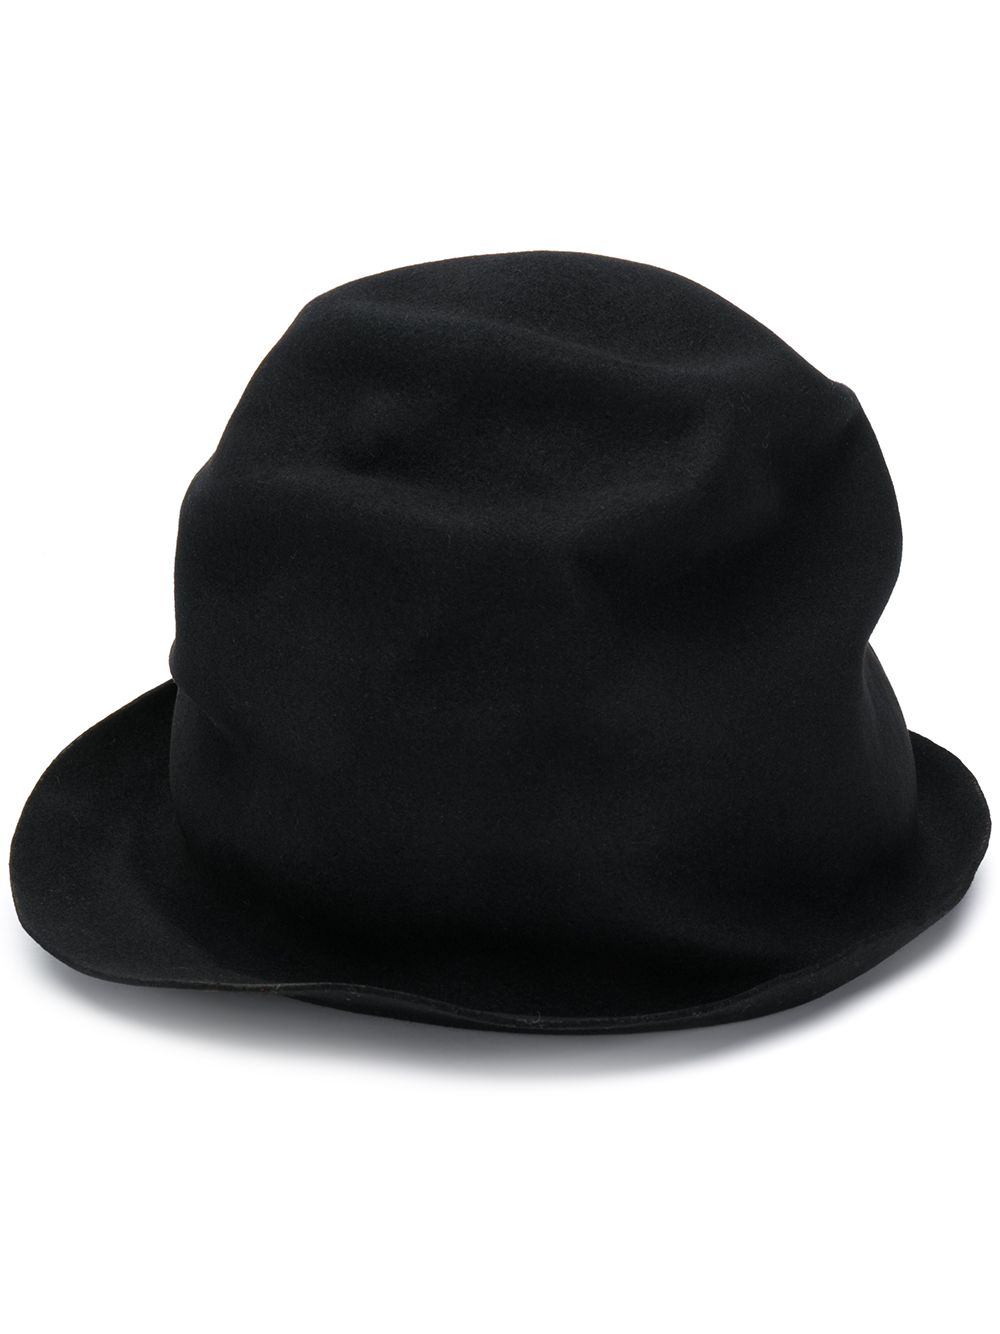 Horisaki 窄檐高顶帽 In Black